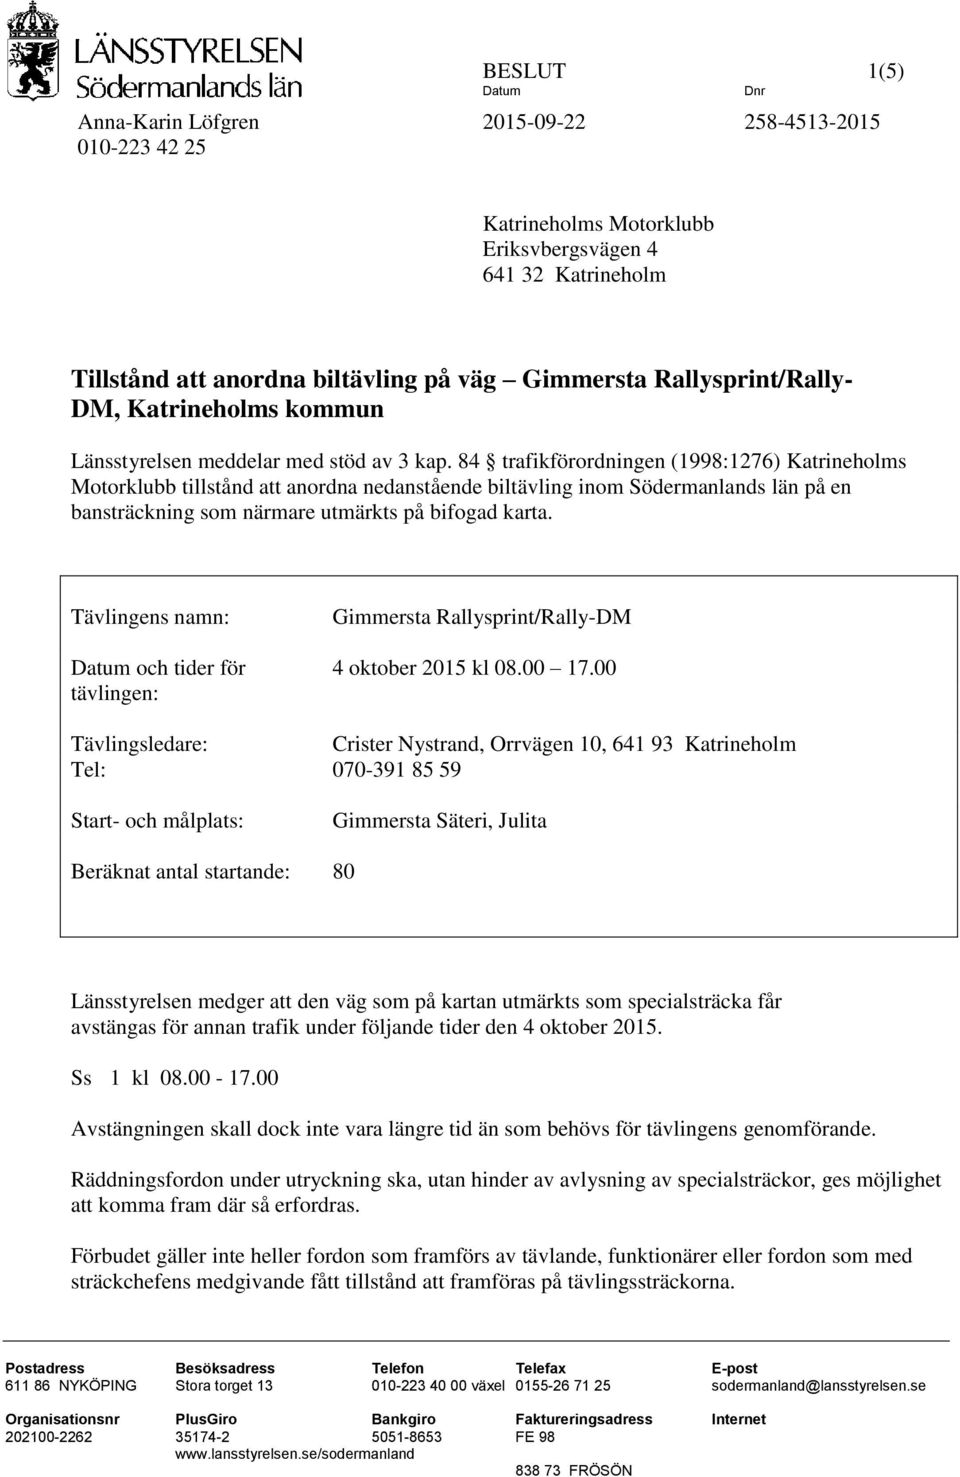 84 trafikförordningen (1998:1276) Katrineholms Motorklubb tillstånd att anordna nedanstående biltävling inom Södermanlands län på en bansträckning som närmare utmärkts på bifogad karta.